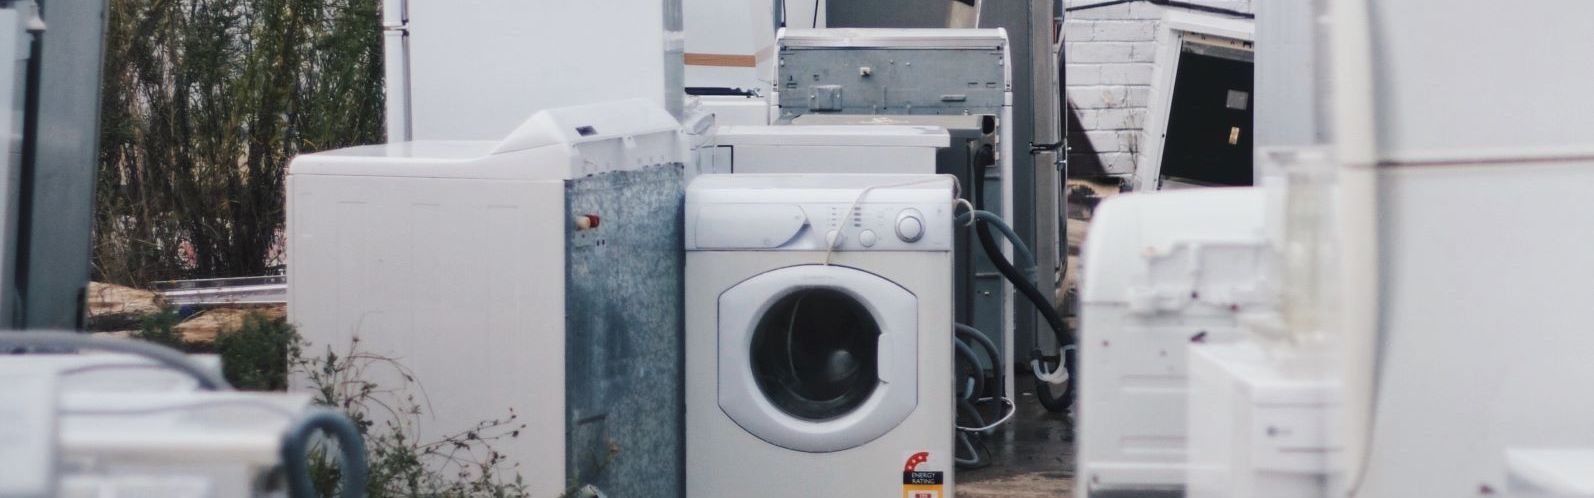 Alte Waschmaschinen auf einem Platz